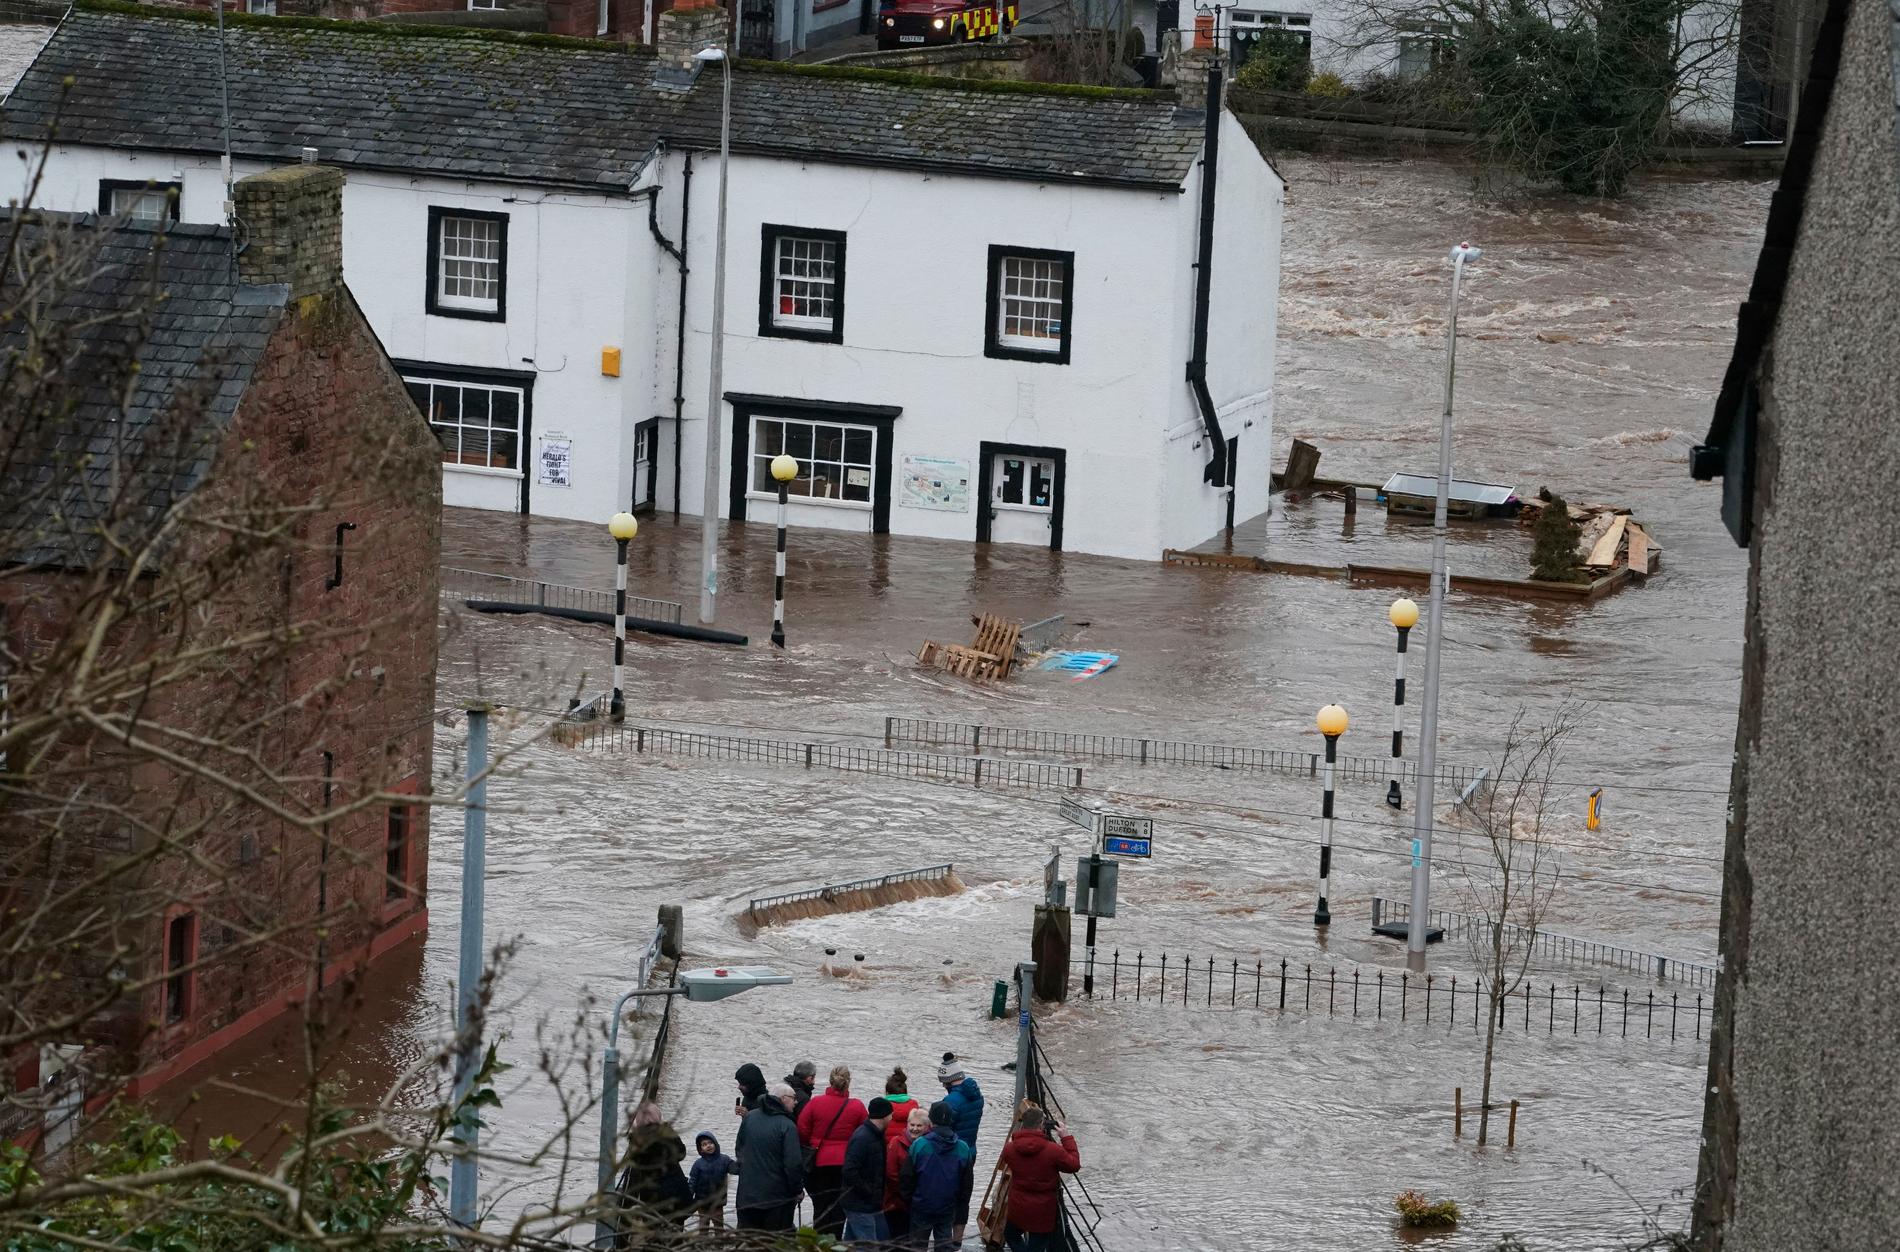 Ciara orsakade stora översvämningar i Storbritannien. Här i Appleby-in-Westmorland översvämmades hela kvarter. 